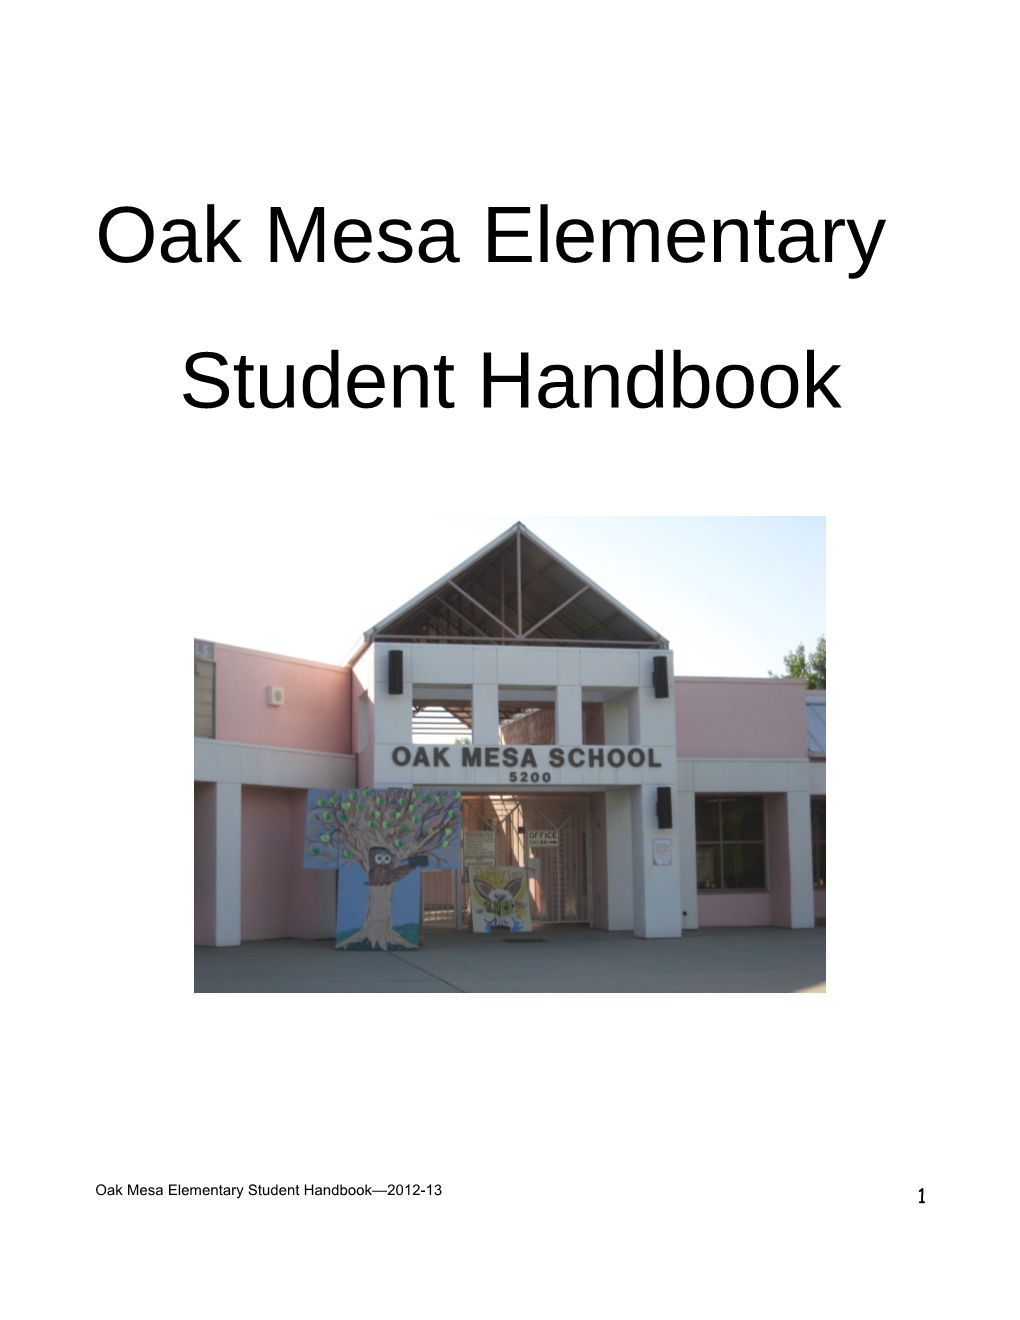 Oak Mesa Elementary School